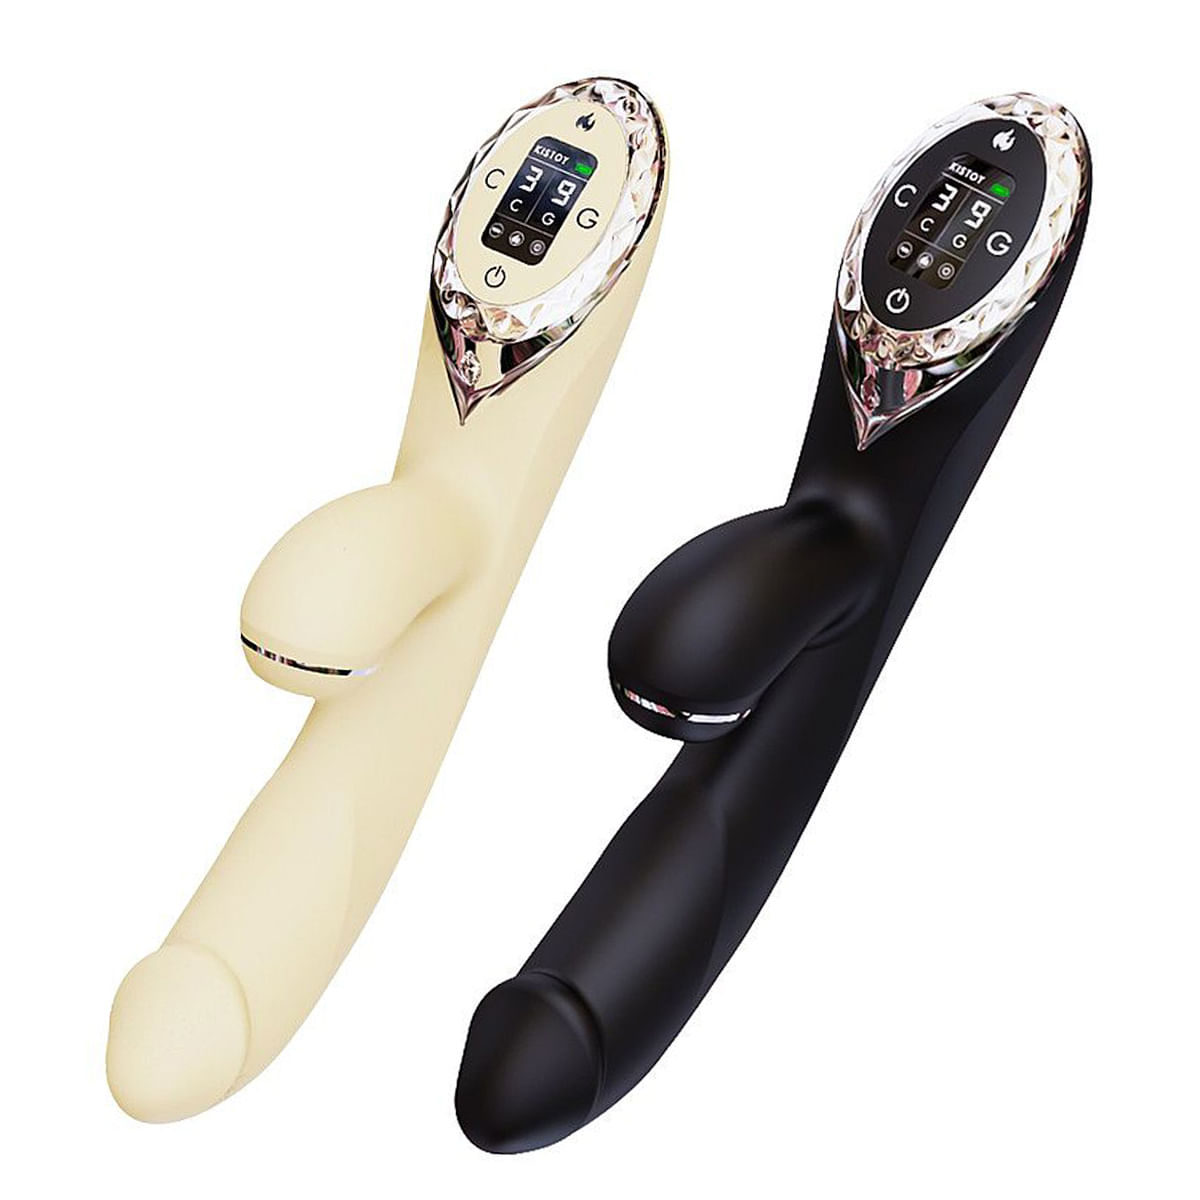 Kisstoy A-King Pro Vibrador com Estimulador de Clitoris 9 Modos de Vibração e Pulsação Sexy Import